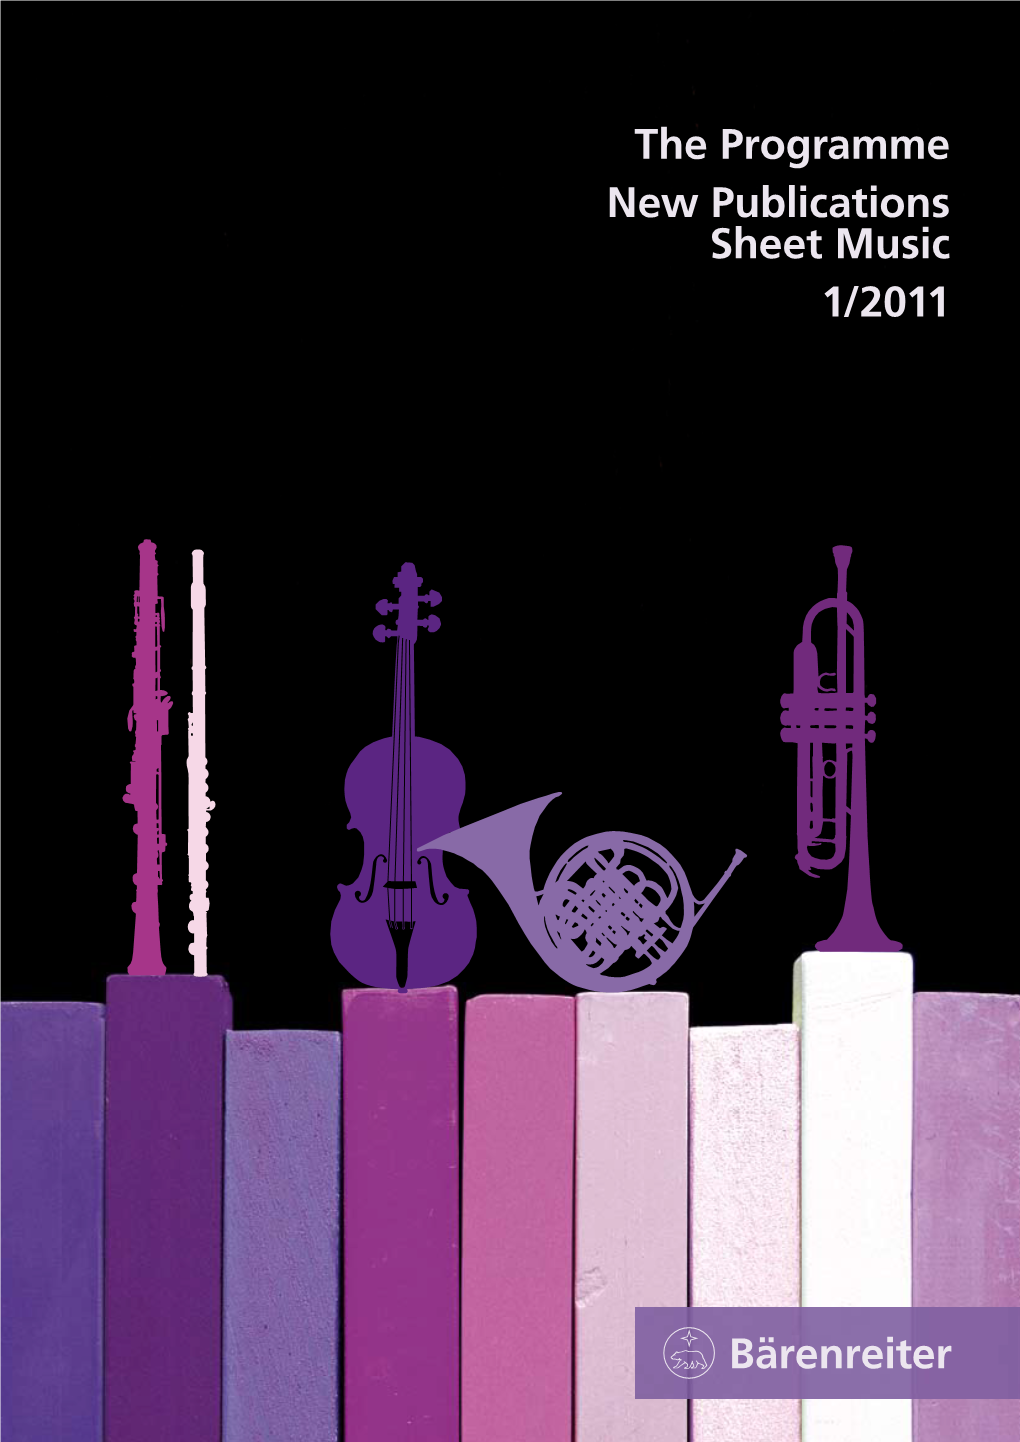 The Programme New Publications Sheet Music 1/2011 Bärenreiter